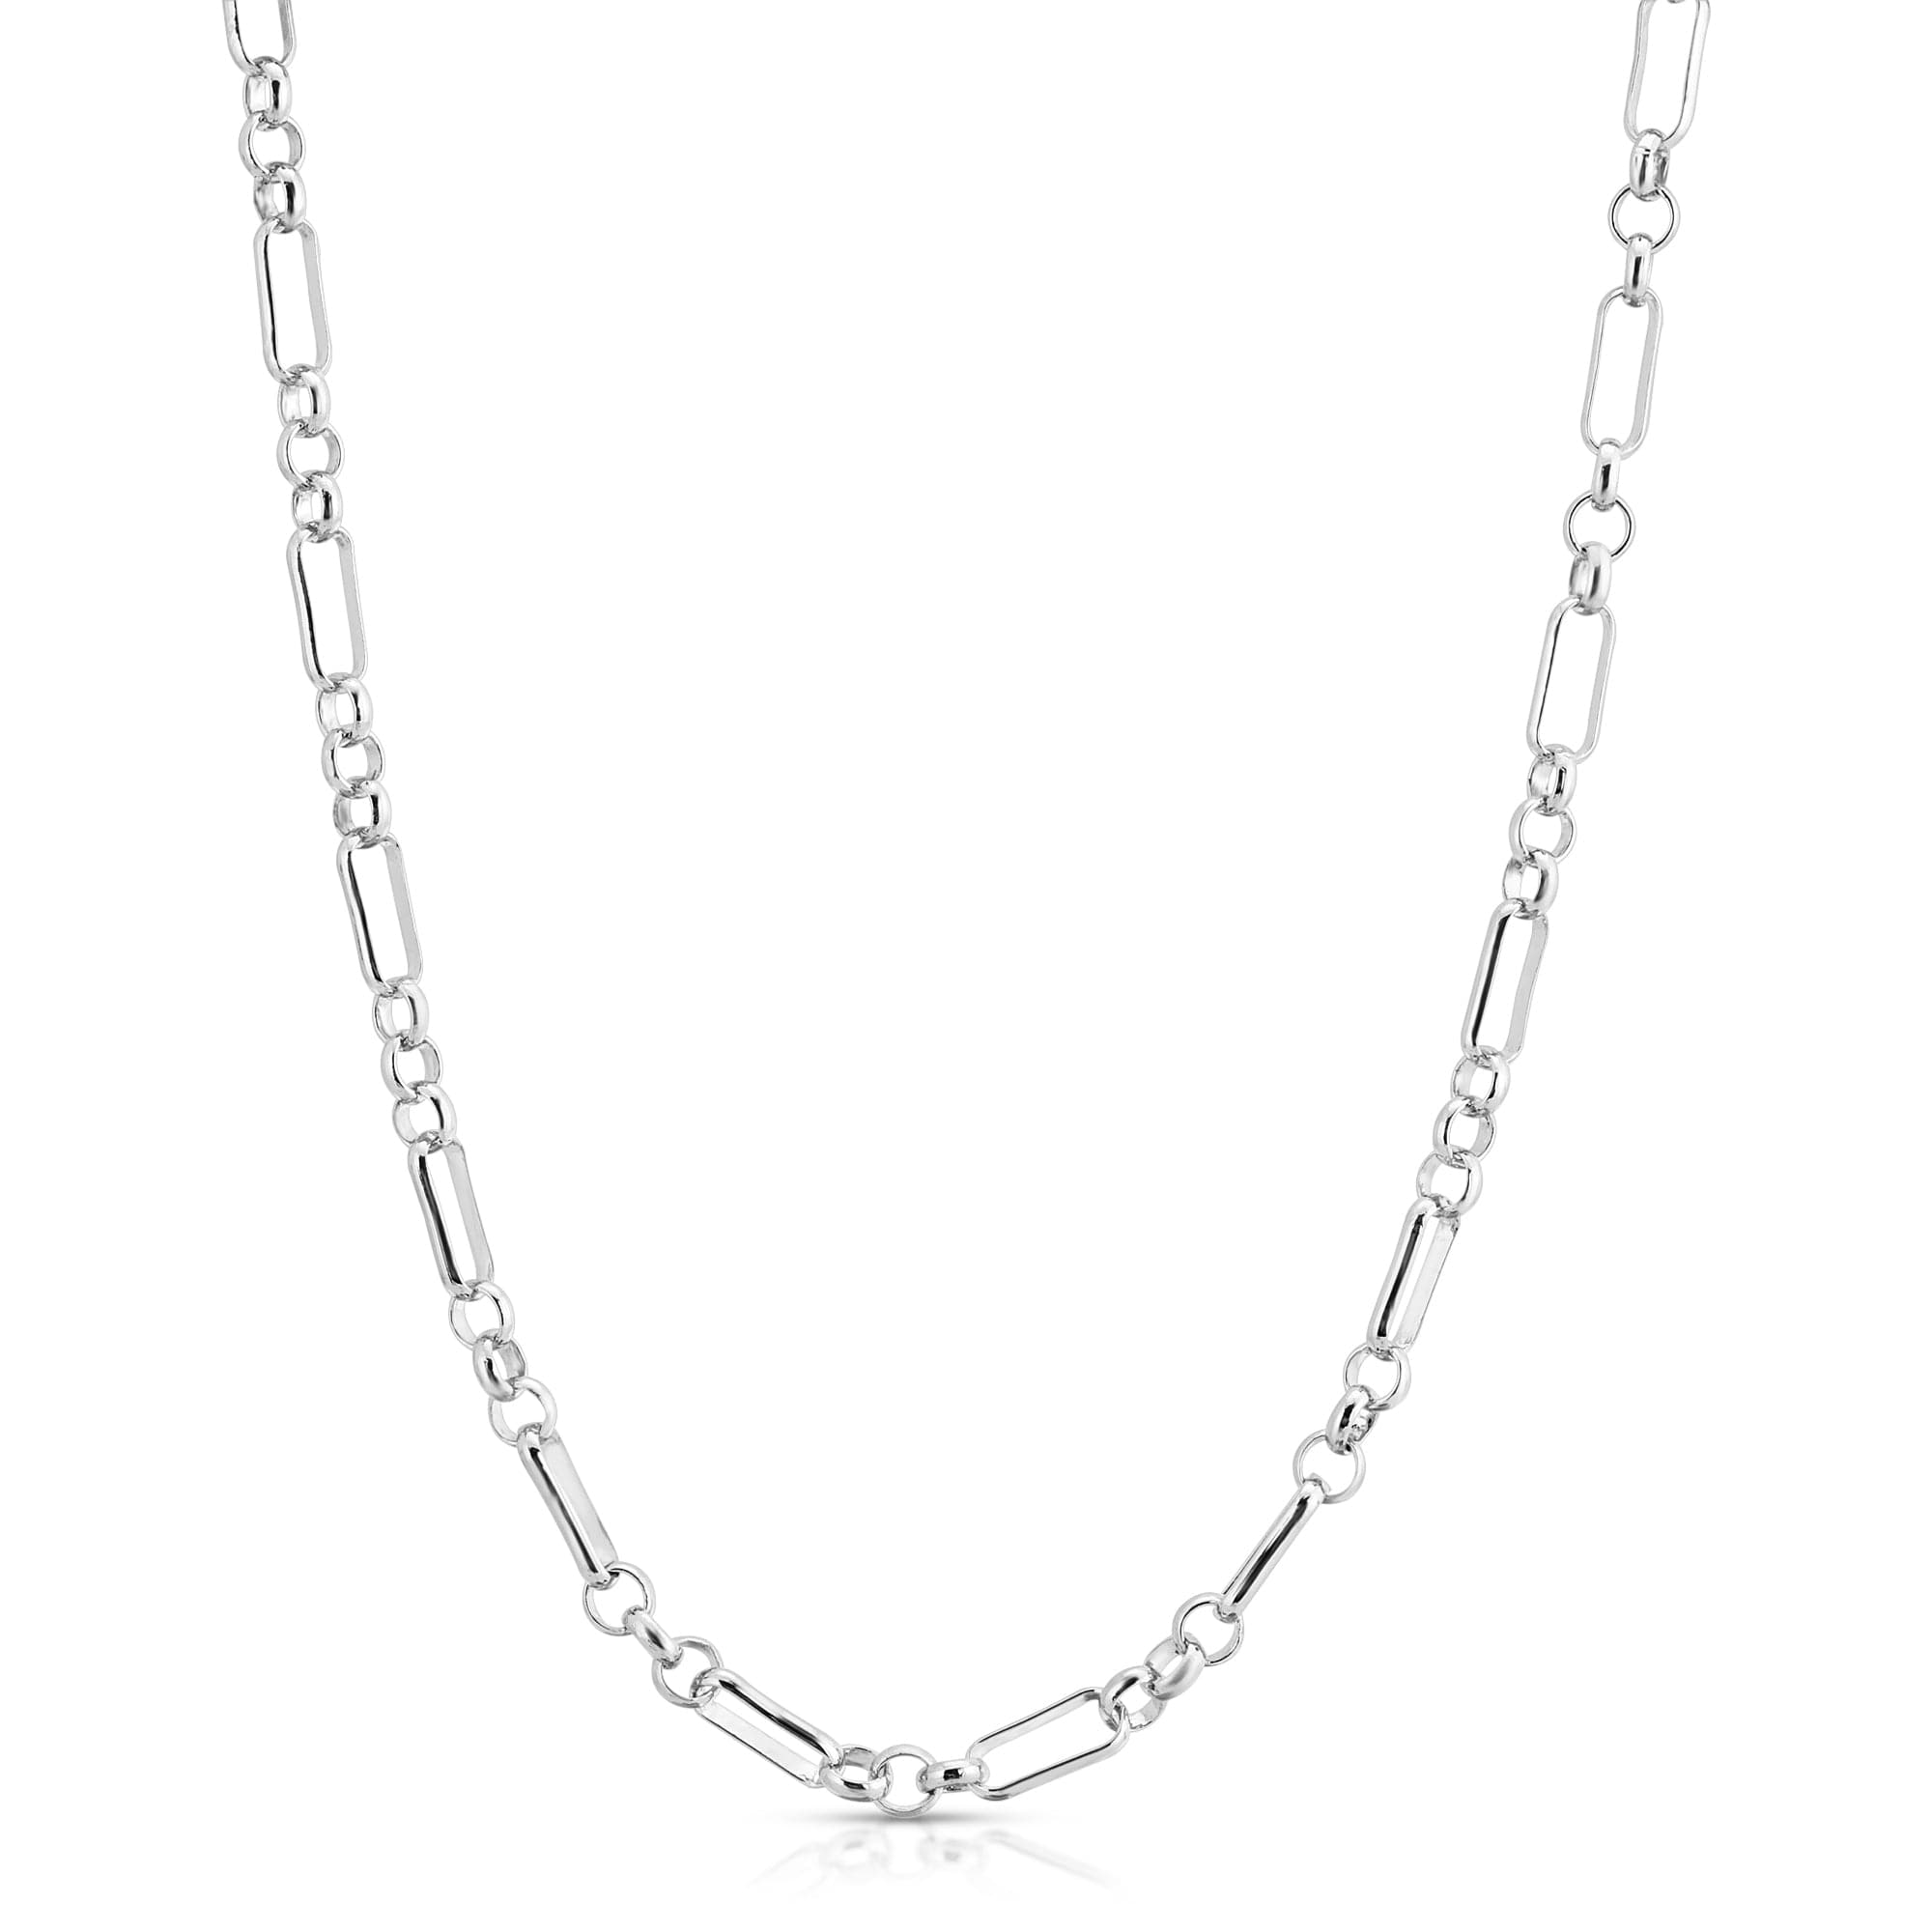 Silver Small Multi Link Chain